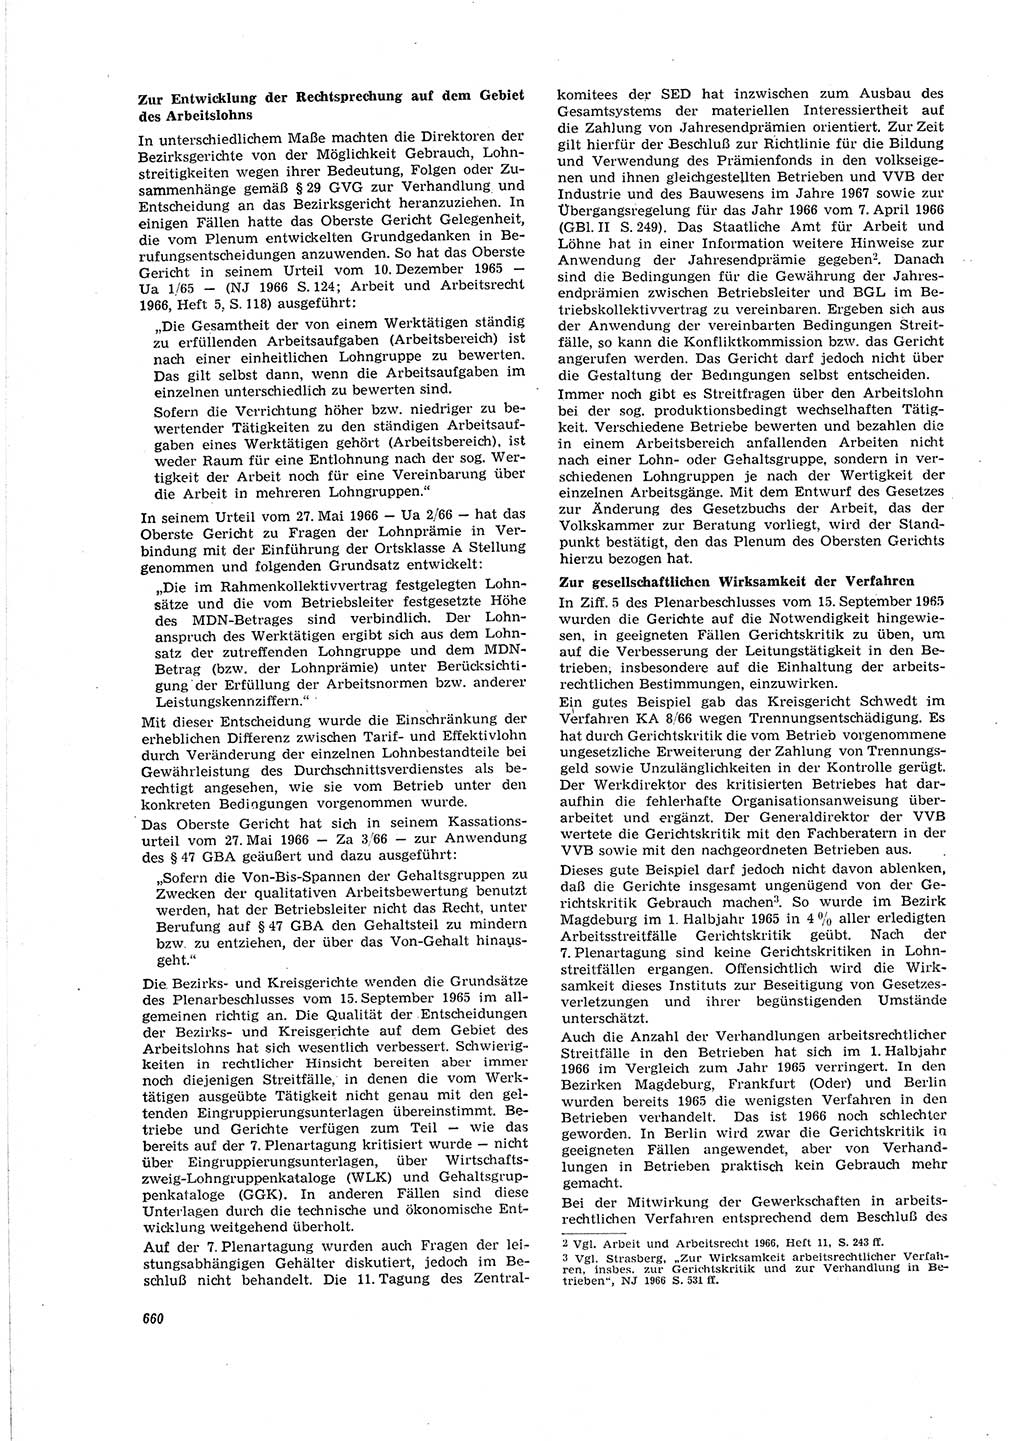 Neue Justiz (NJ), Zeitschrift für Recht und Rechtswissenschaft [Deutsche Demokratische Republik (DDR)], 20. Jahrgang 1966, Seite 660 (NJ DDR 1966, S. 660)